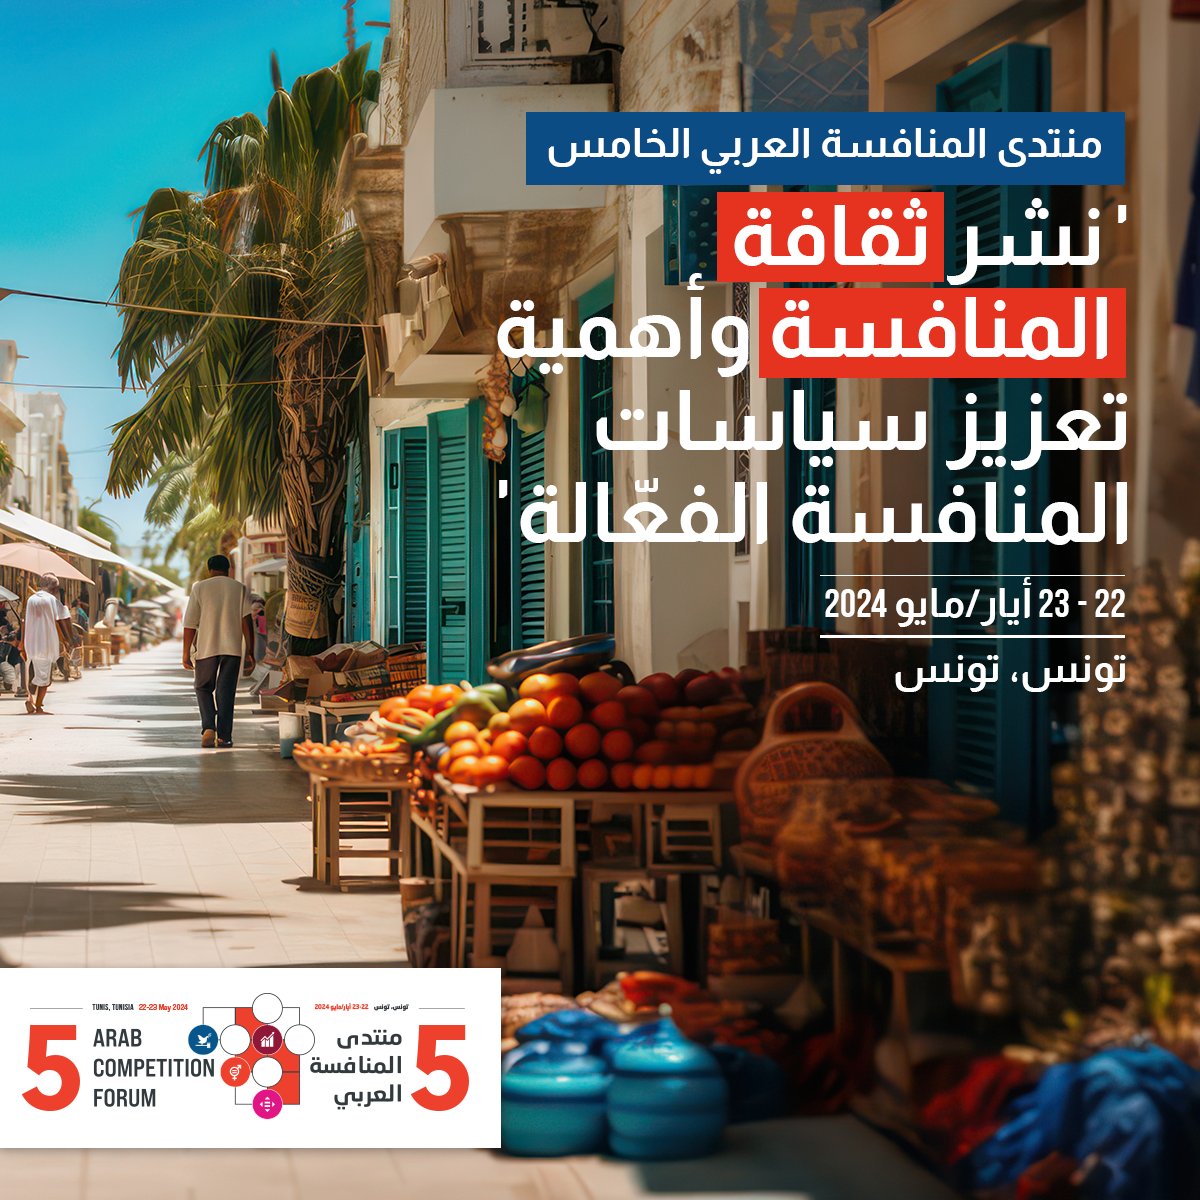 تنظّم الإسكوا النسخة الـ5 من منتدى المنافسة العربي في #تونس، وذلك بالشراكة مع @UNCTAD و@OECD ومجلس المنافسة في تونس، ولجنة المنافسة لدى @comesa_lusaka. اطّلعوا على المعلومات هنا 👈 bit.ly/ACF2024-MAAR وترقّبوا المزيد!